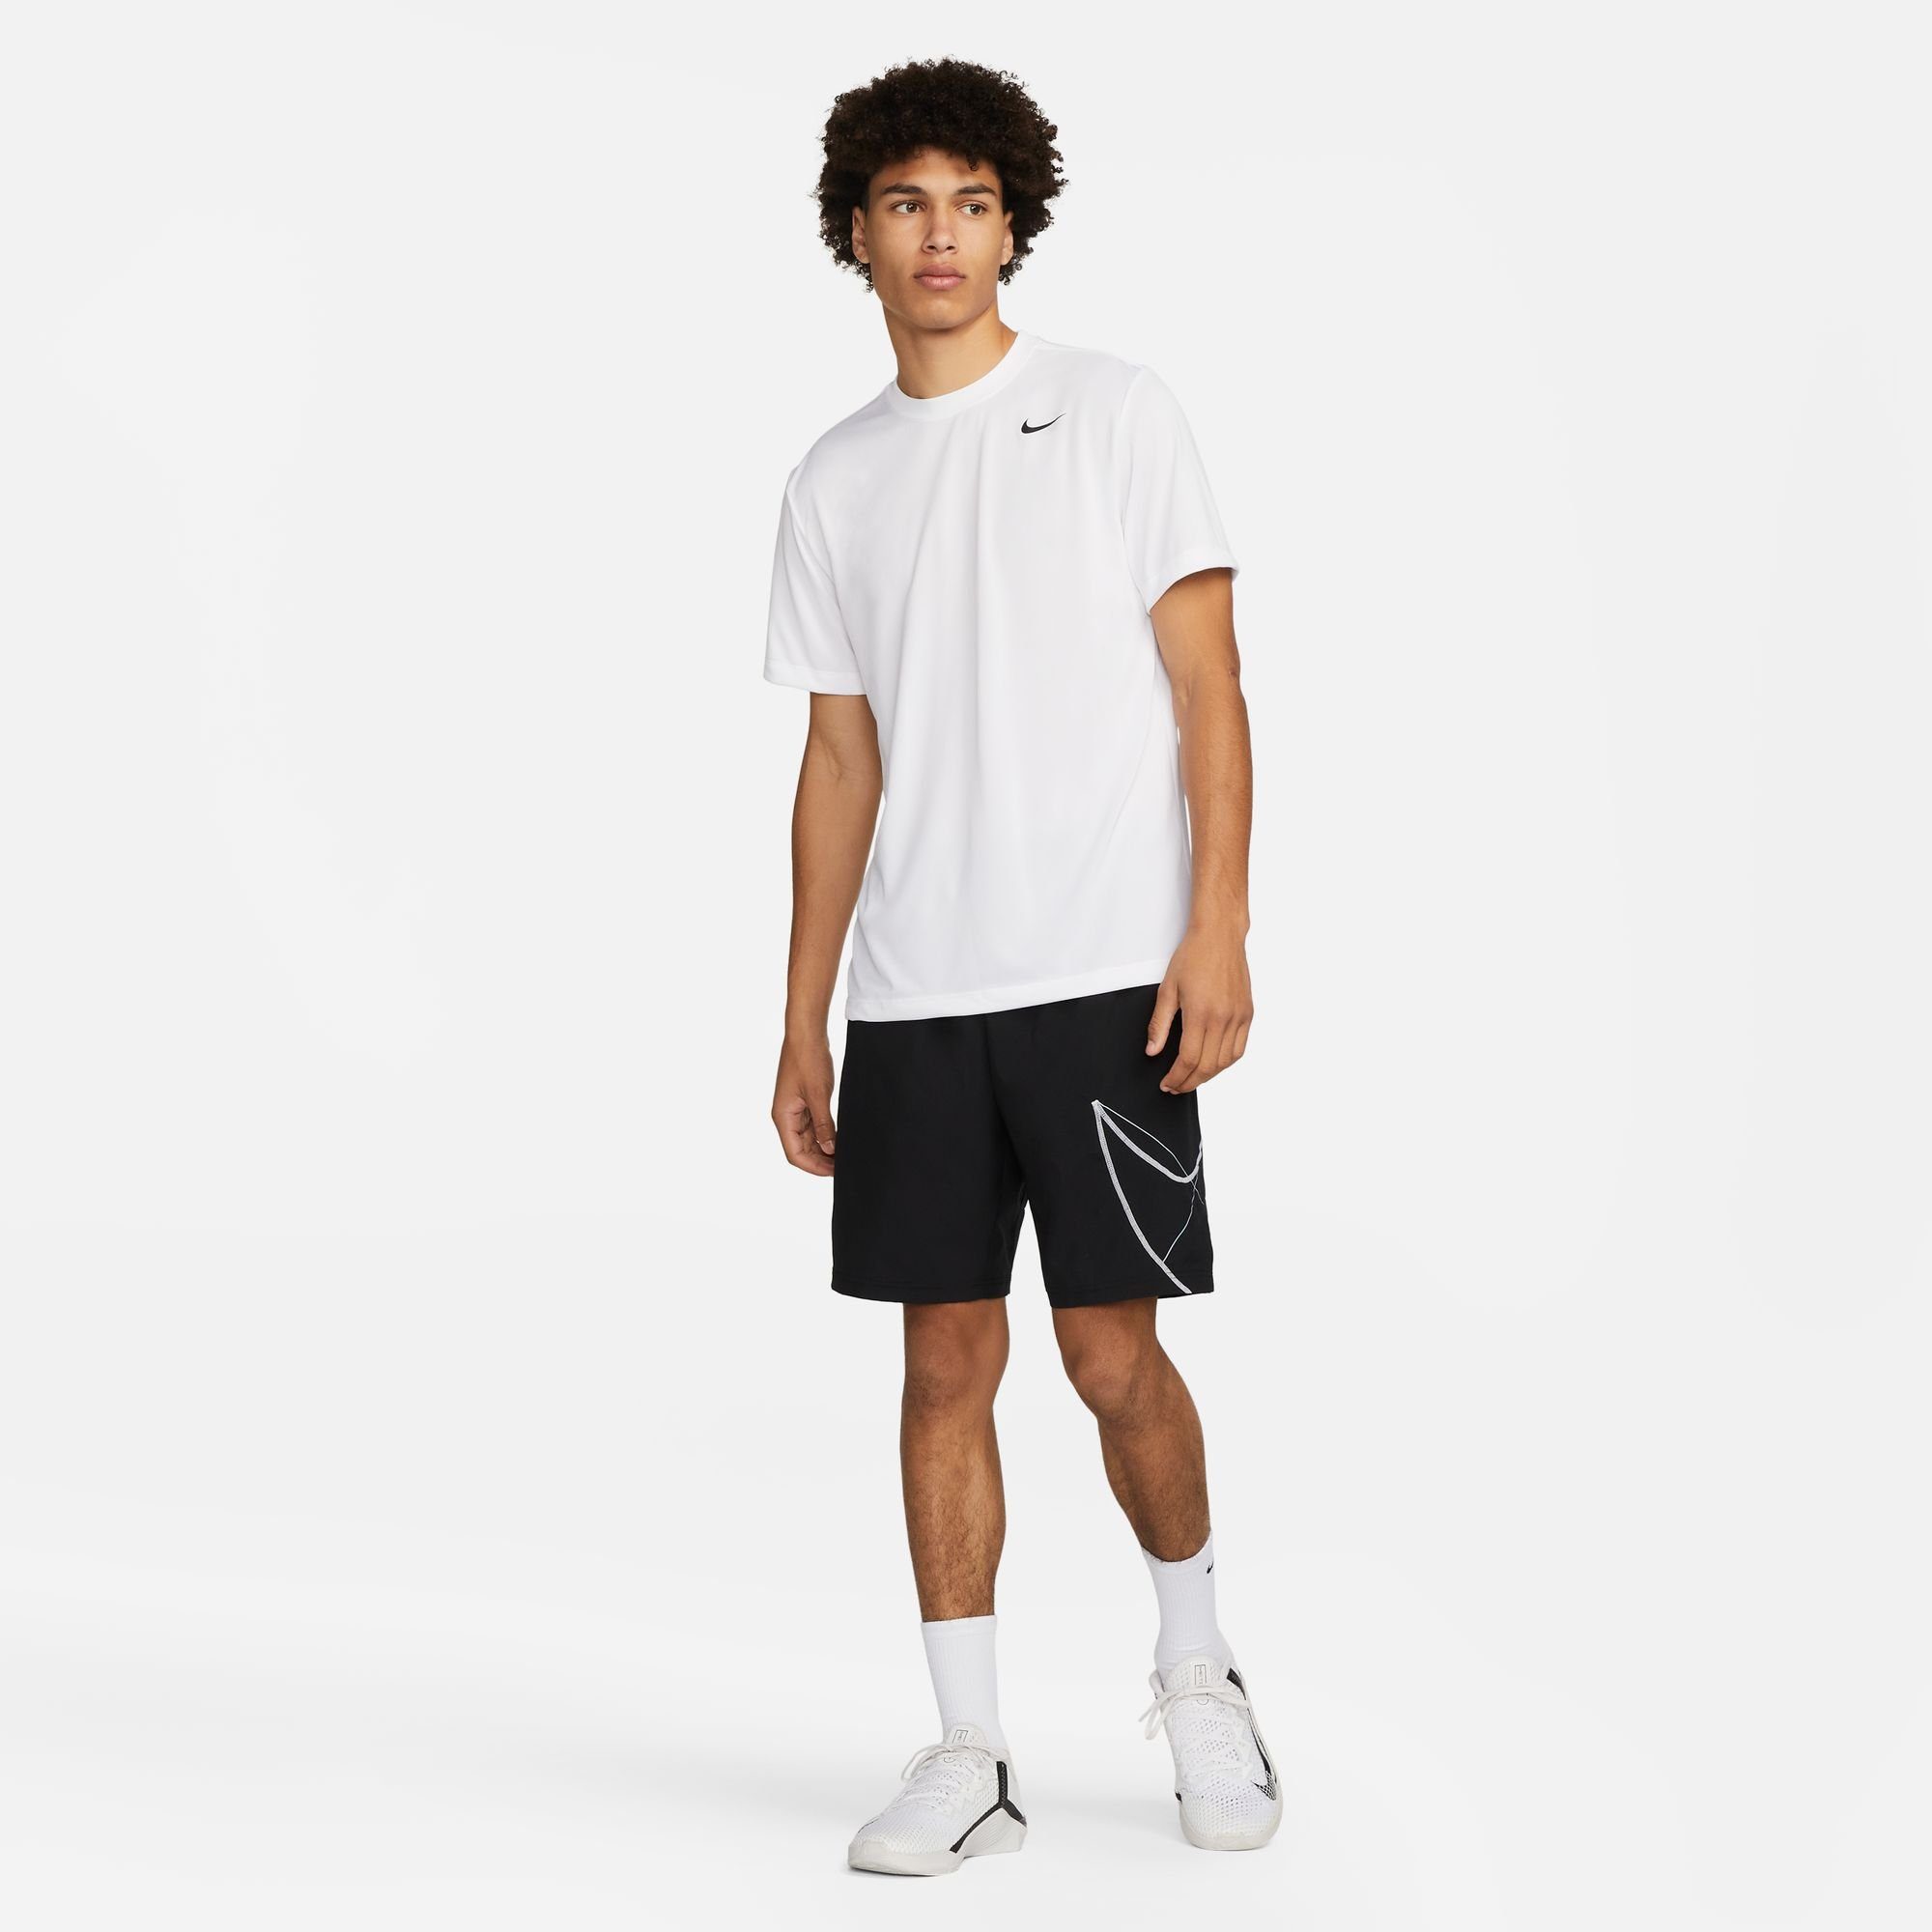 LEGEND WHITE/BLACK FITNESS DRI-FIT Nike Trainingsshirt MEN'S T-SHIRT